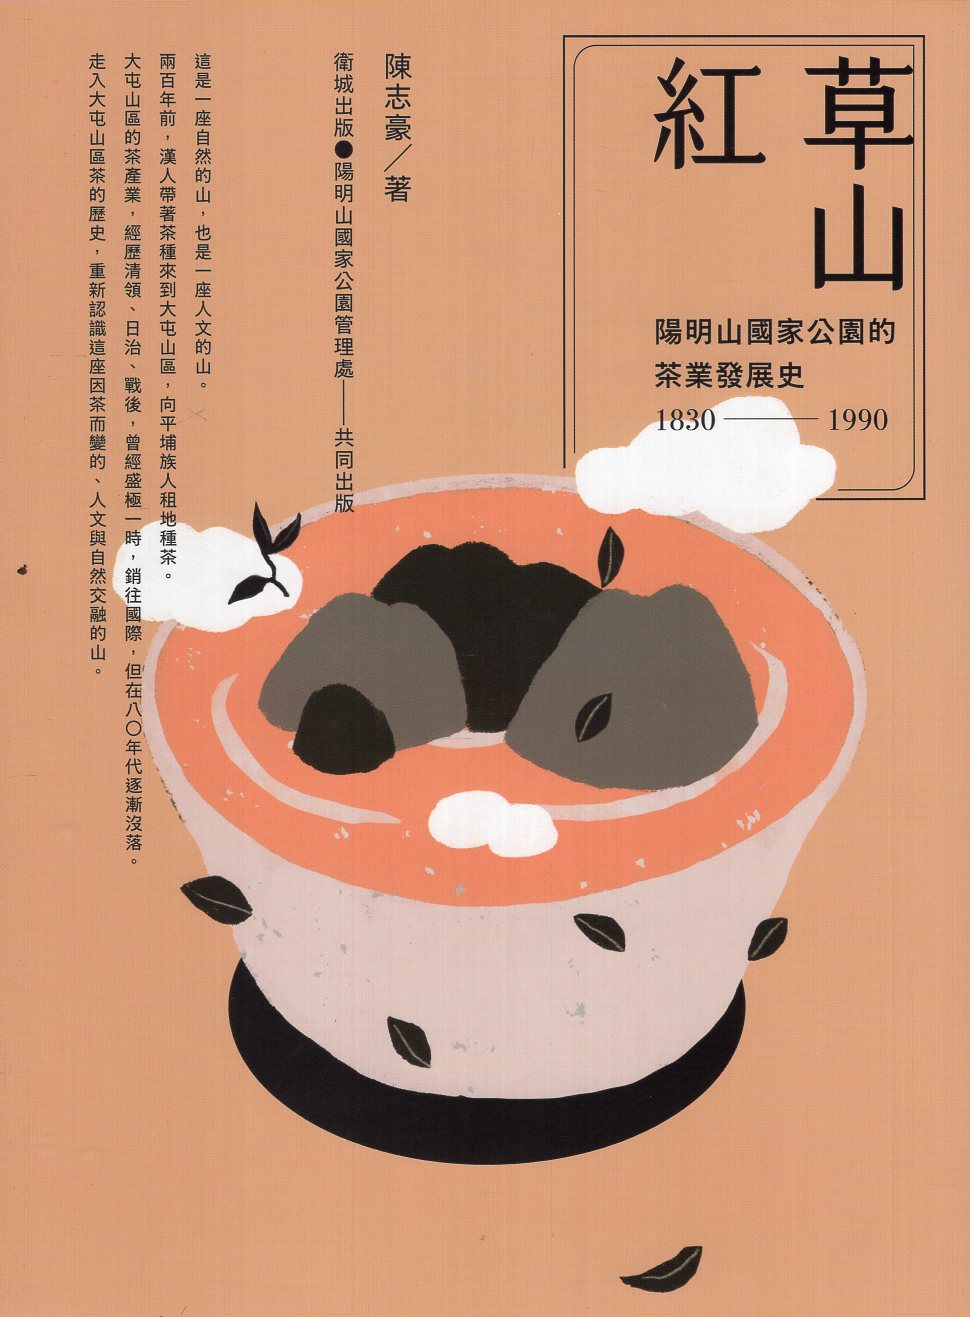 《草山紅：陽明山國家公園的茶業發展史1830-1990 》封面